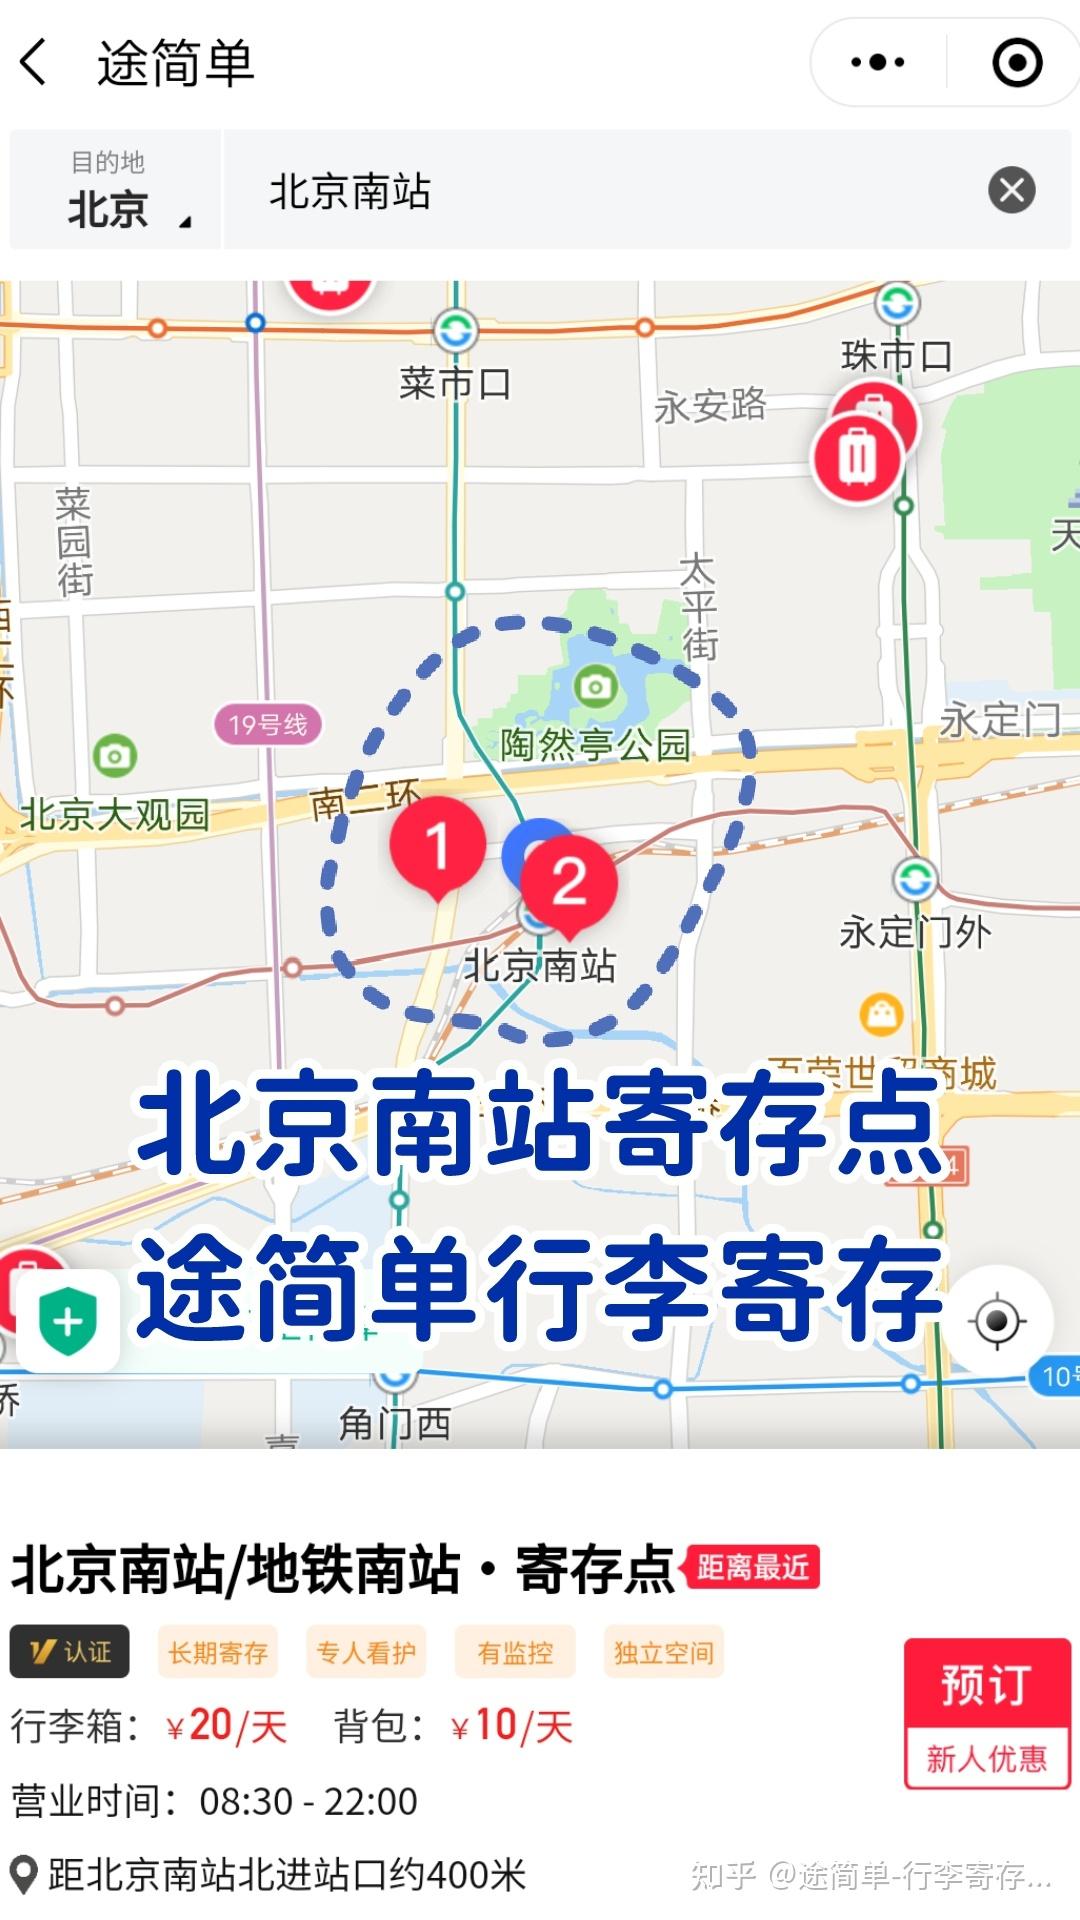 北京南站行李寄存在哪里?